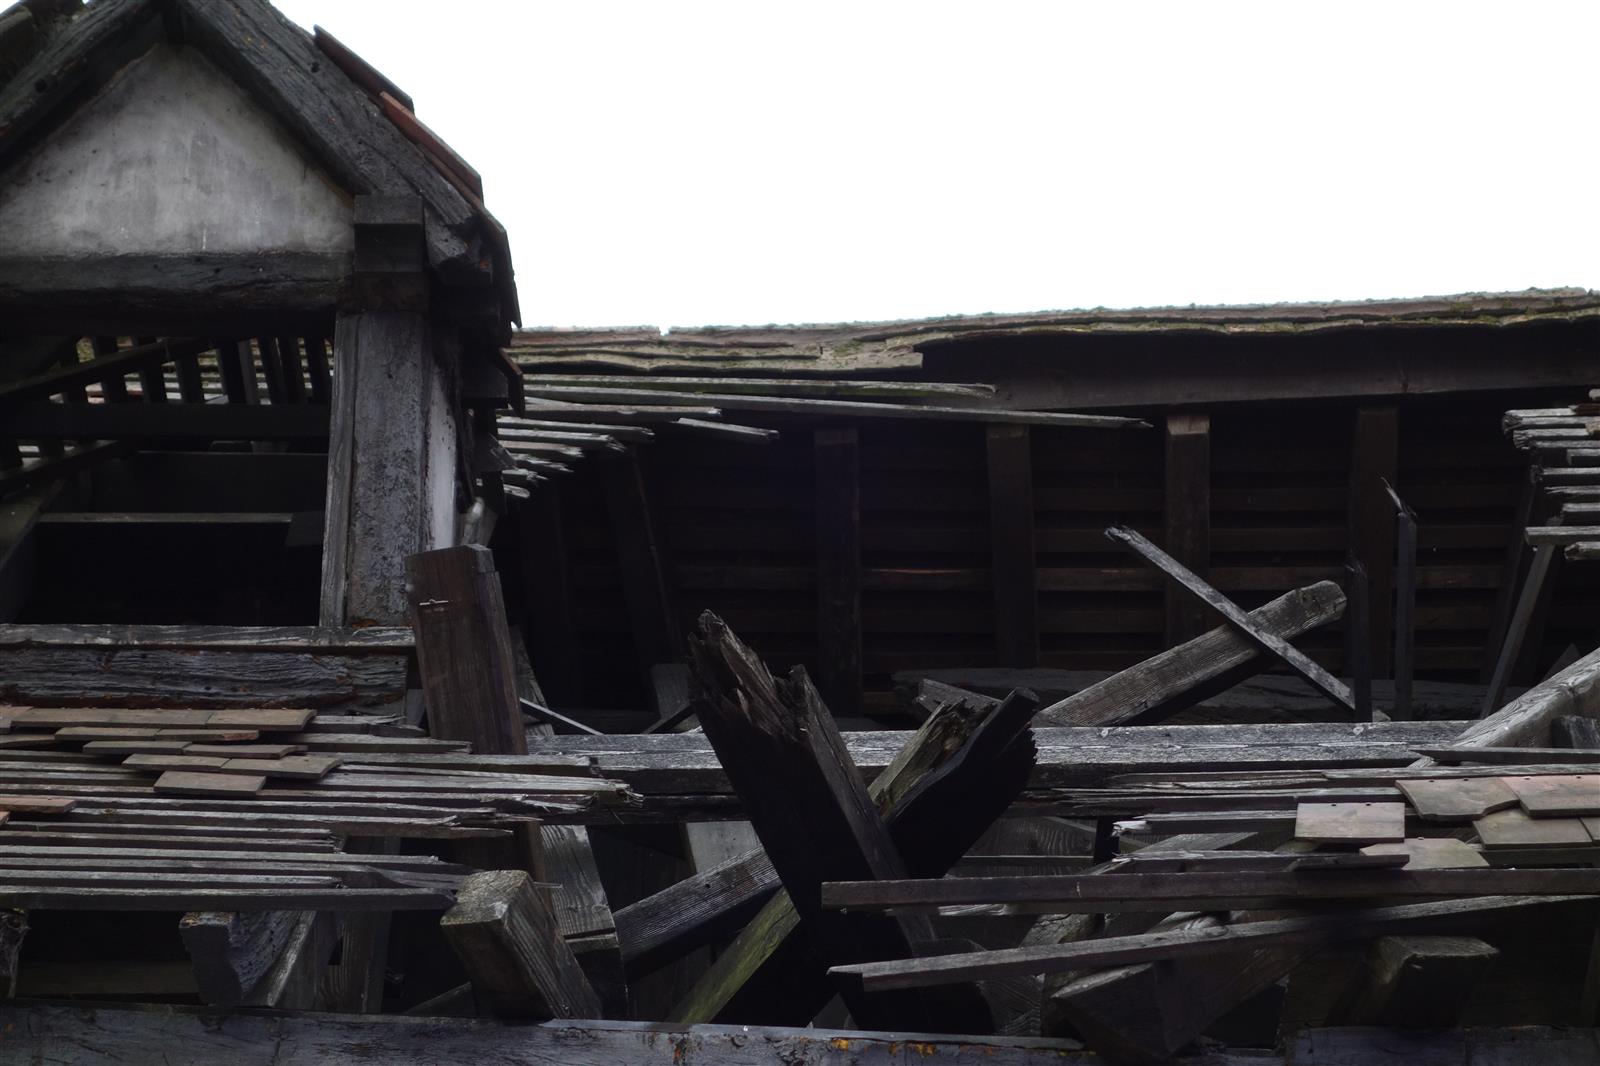 61. Potter's Cottage - Destroyed Roof